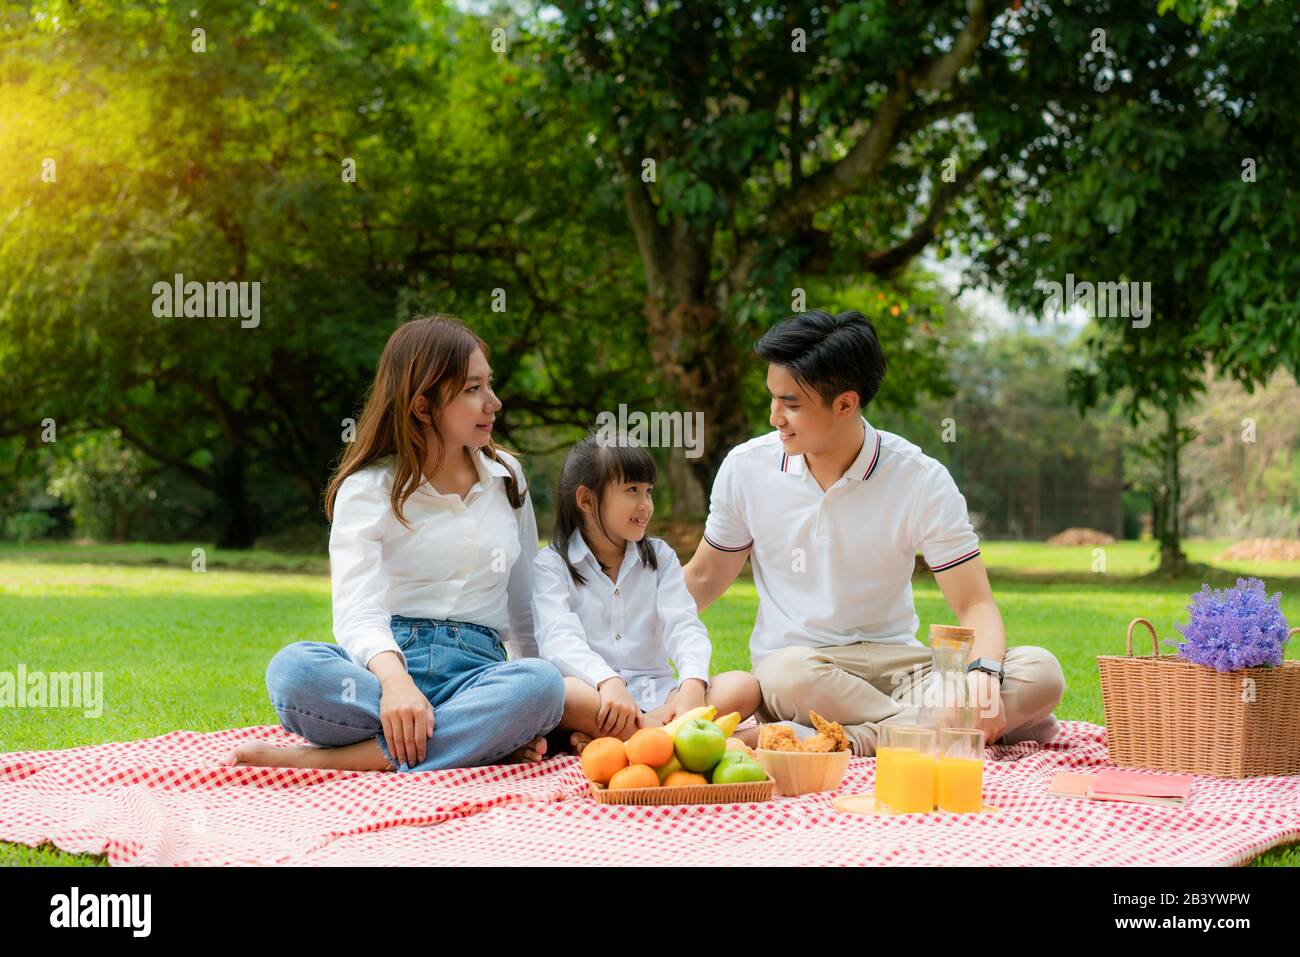 Asiatische Teenager Familie fröhlicher Urlaub Picknick-Moment im Park mit Mutter und Tochter, die Vater anschaut und lächelt, um glücklich zu verbringen Urlaub Zeit togerter ich Stockfoto